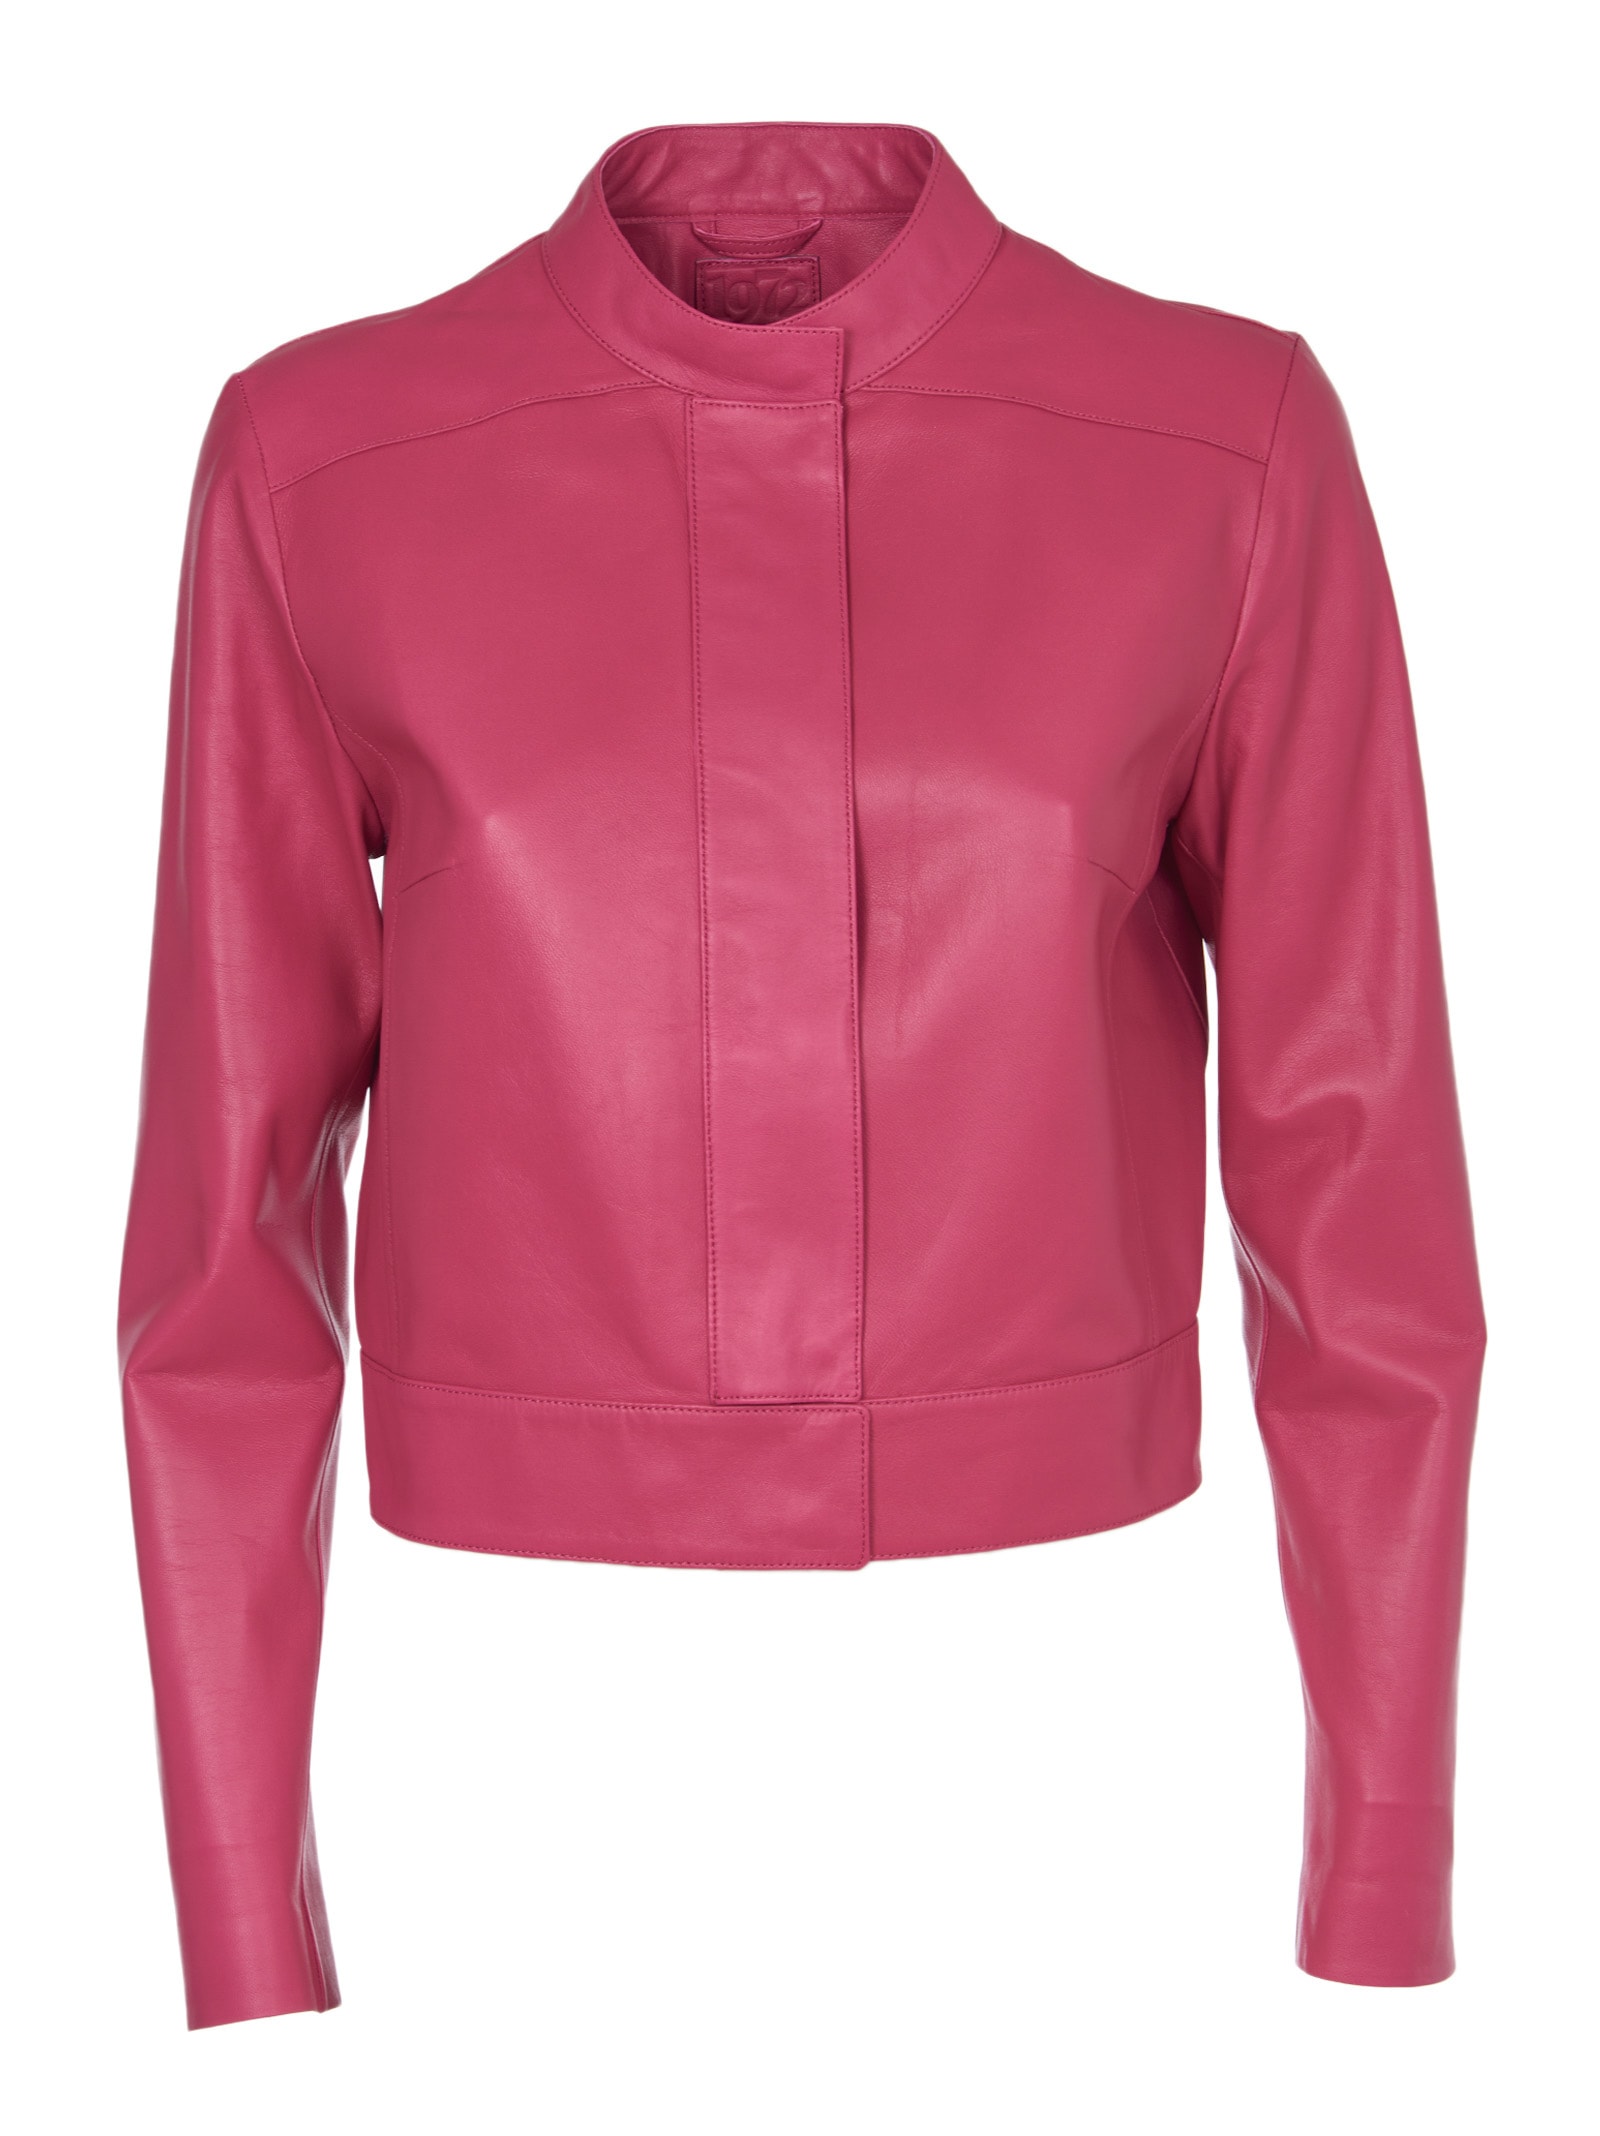 Desa 1972 Pink Leather Short Jacket